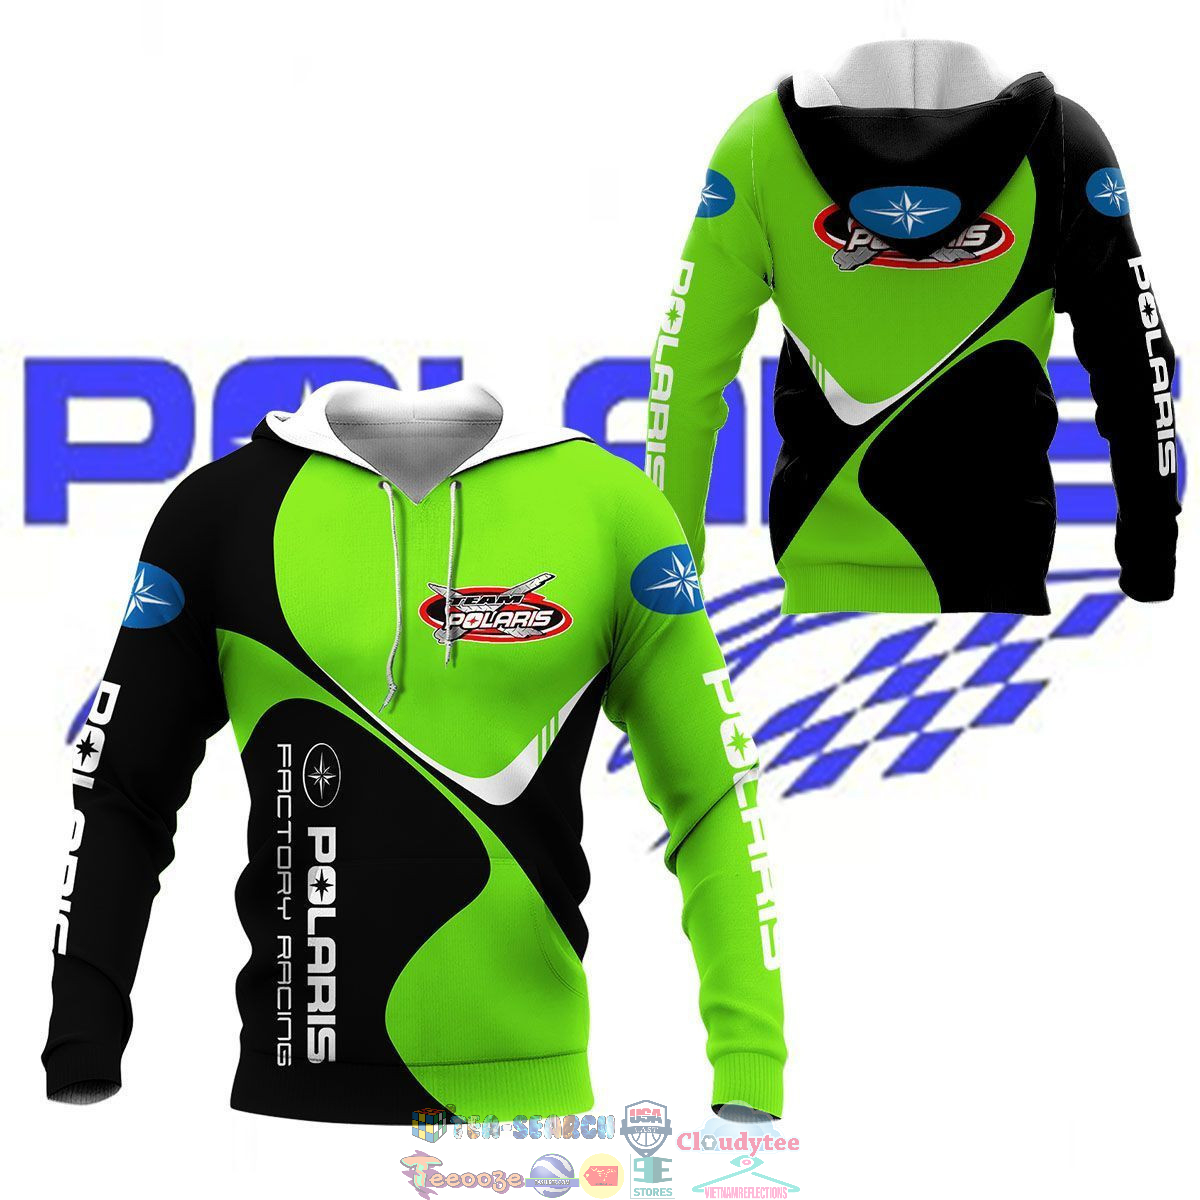 QG5tDqKP-TH160822-39xxxPolaris-Factory-Racing-Green-3D-hoodie-and-t-shirt3.jpg